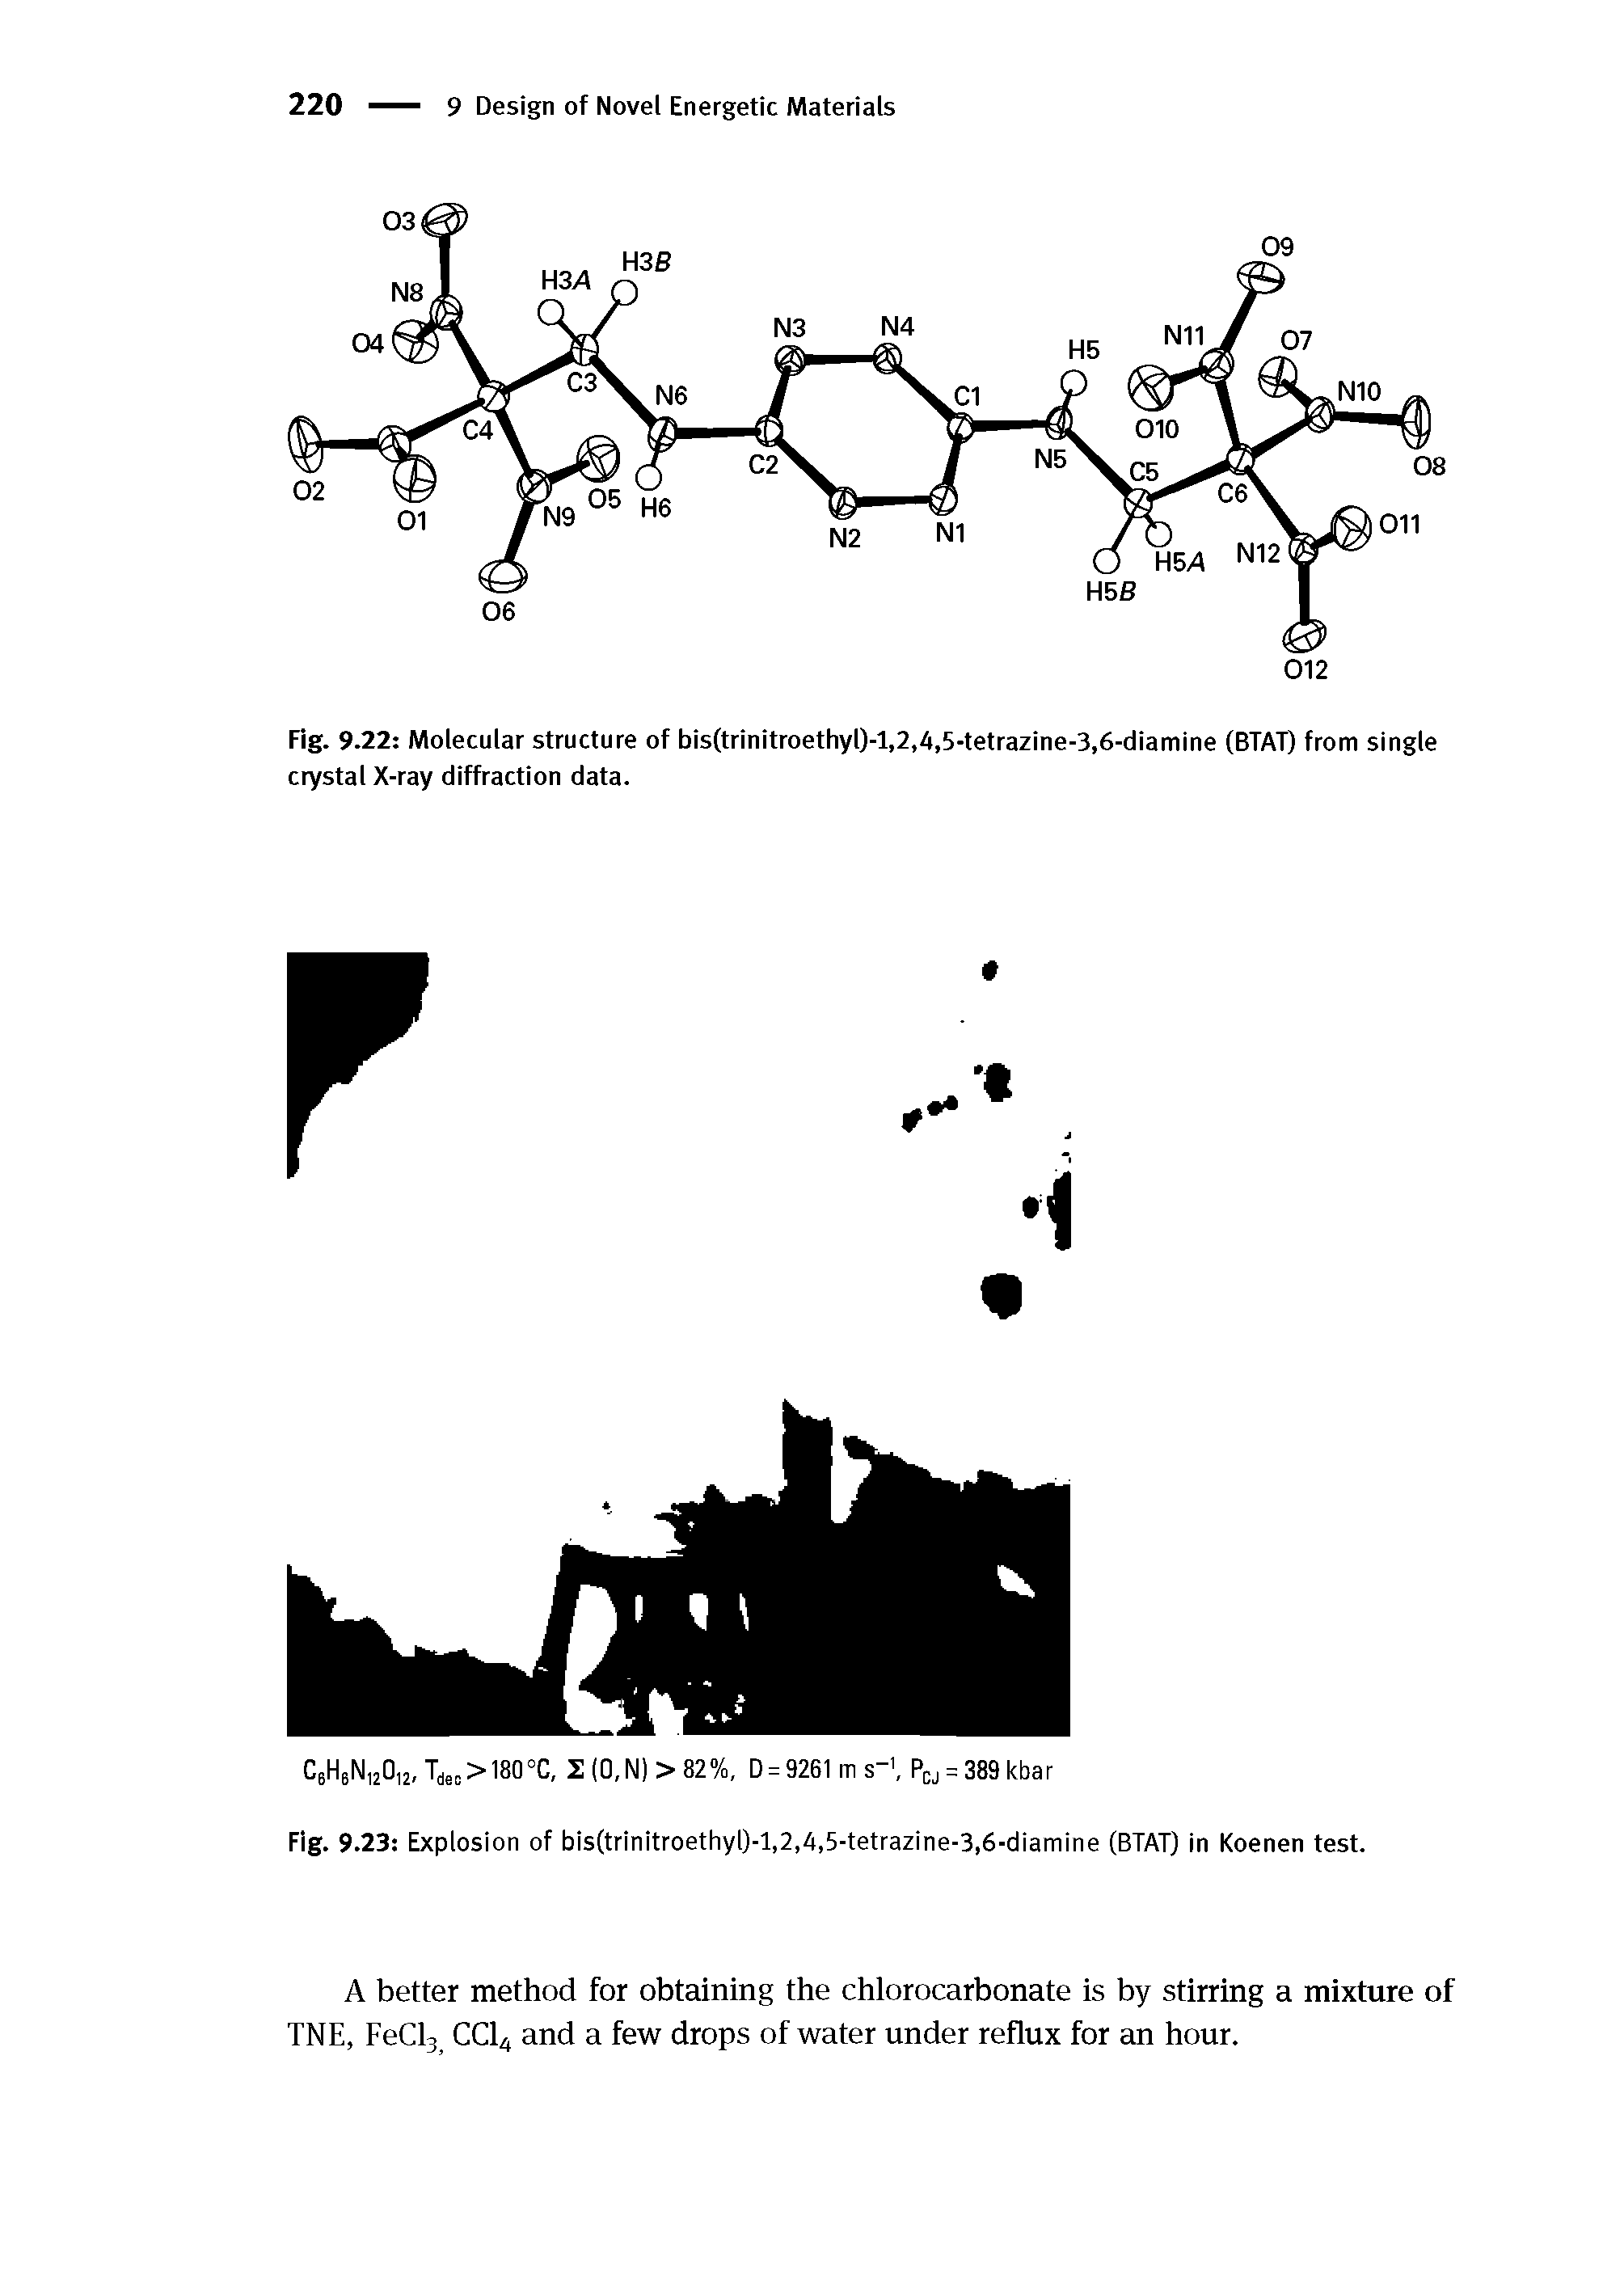 Fig. 9.23 Explosion of bis(trinitroethyl)-l,2,4,5-tetrazine-3,6-diamine (BTAT) in Koenen test.